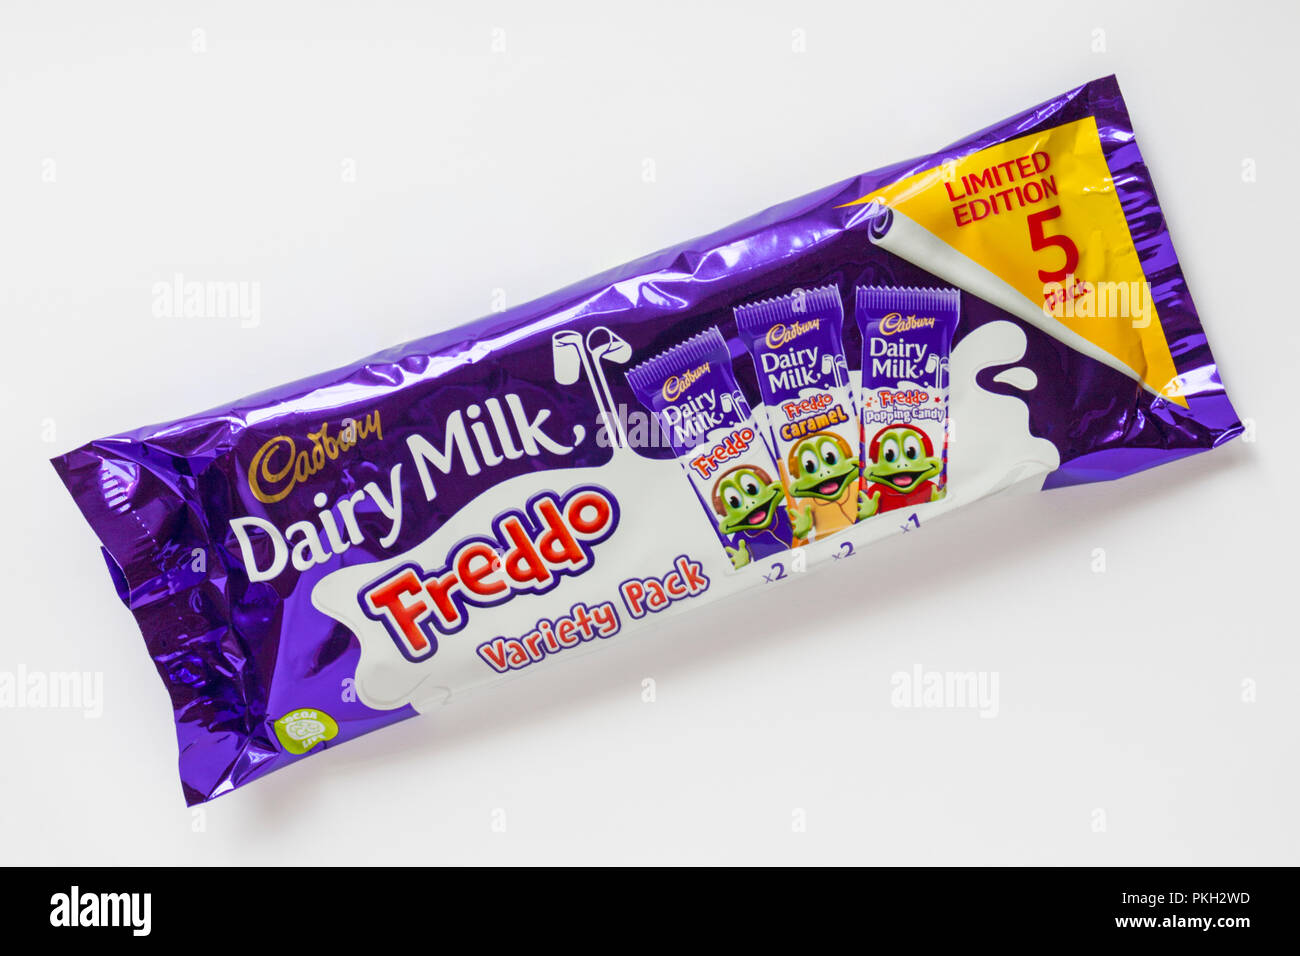 Pacchetto di Cadbury latte freddo variety pack isolati su sfondo bianco - edizione limitata 5 pack - cioccolato, caramello & popping candy Foto Stock